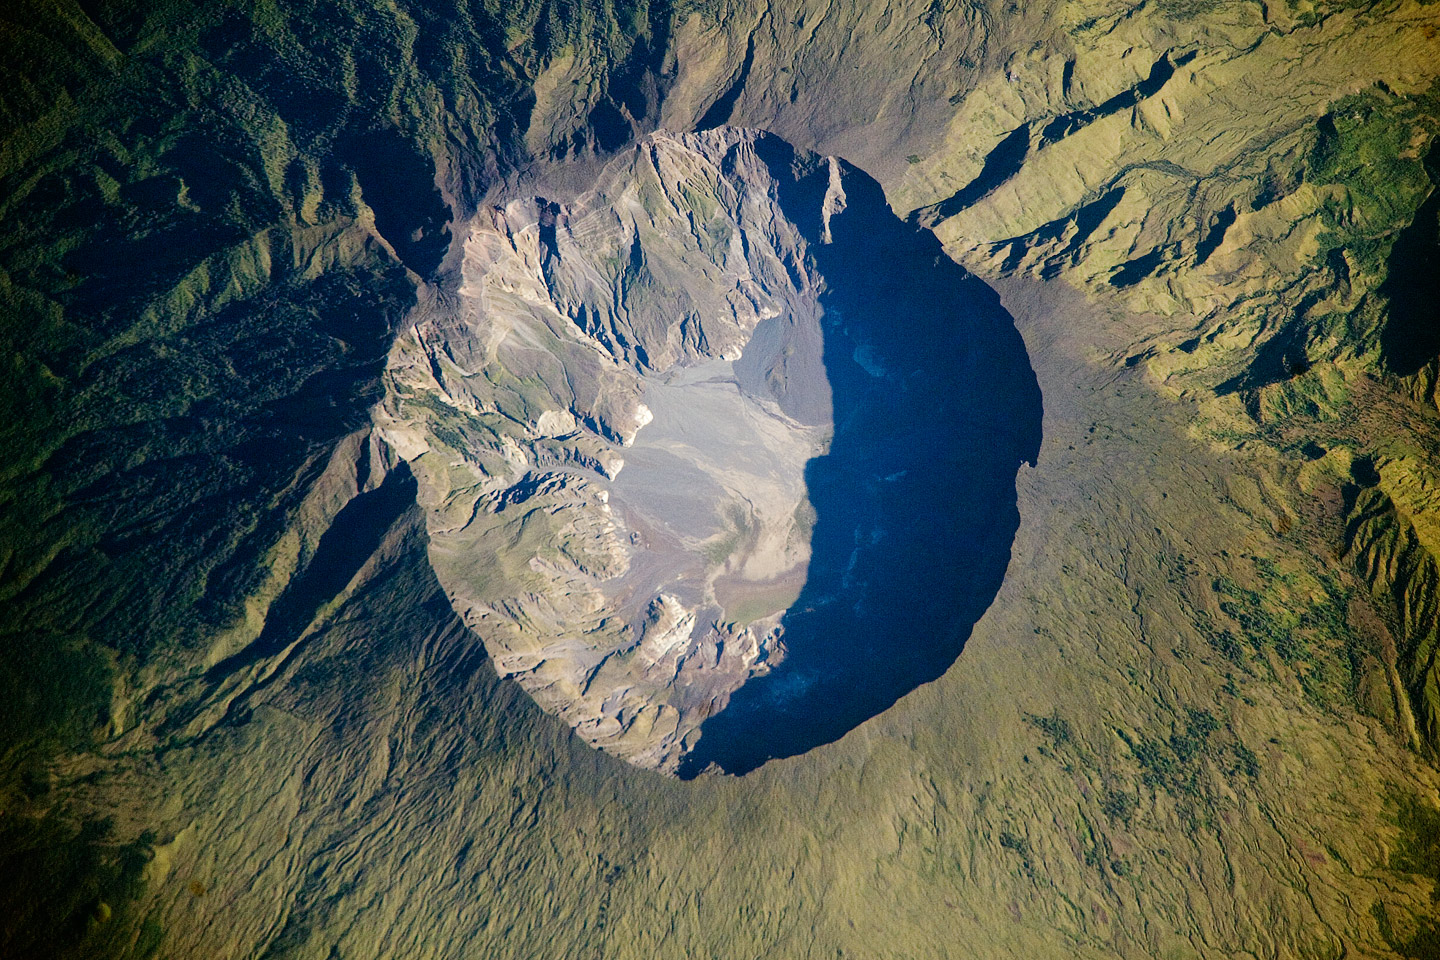 Tamboro volcano